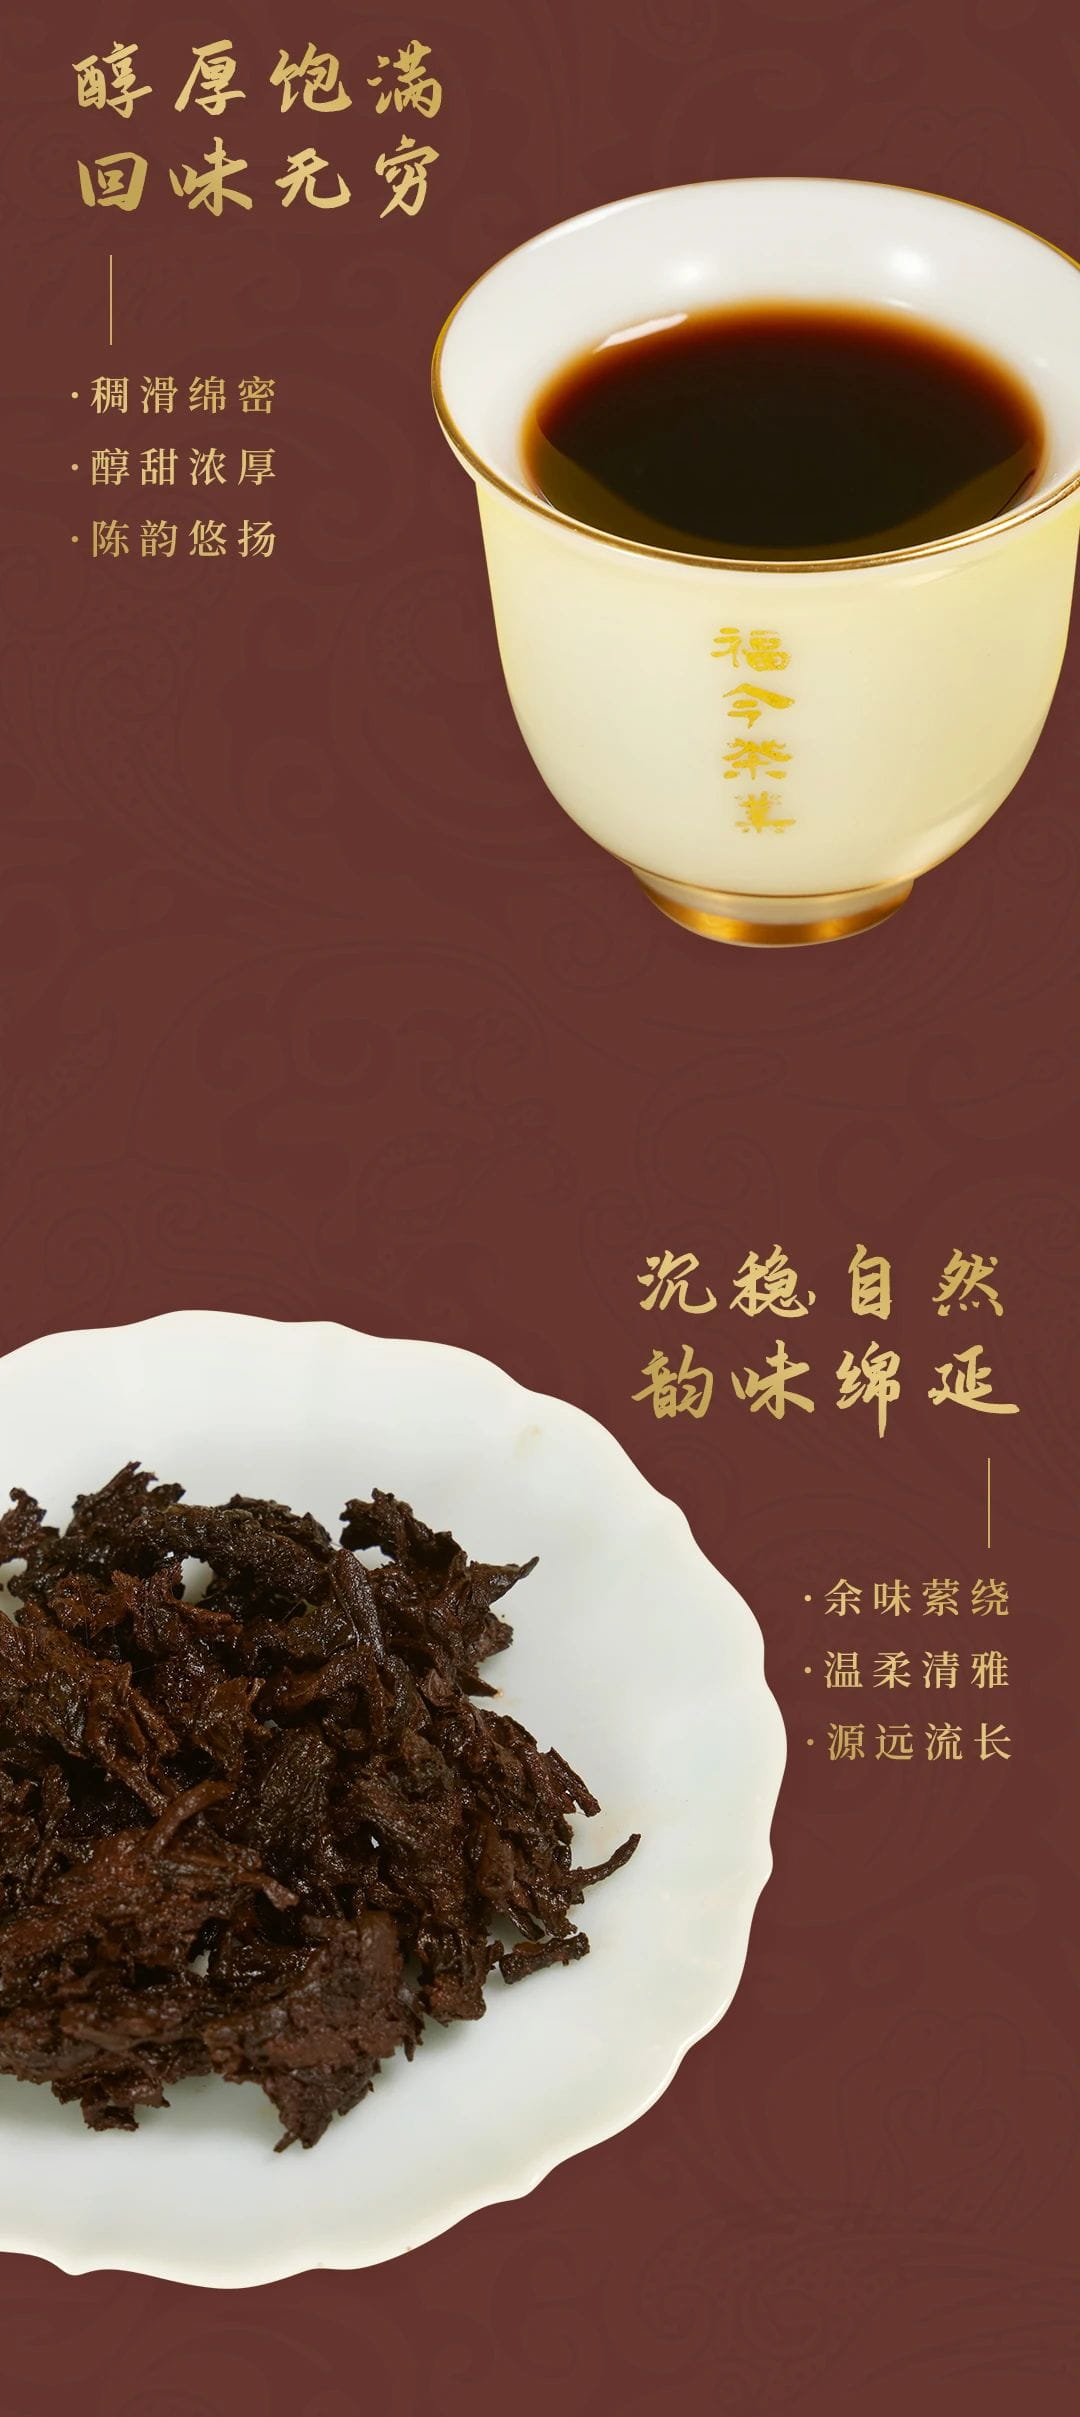 特供系列丨福今茶业2016年『乌金老茶头』正式发售！